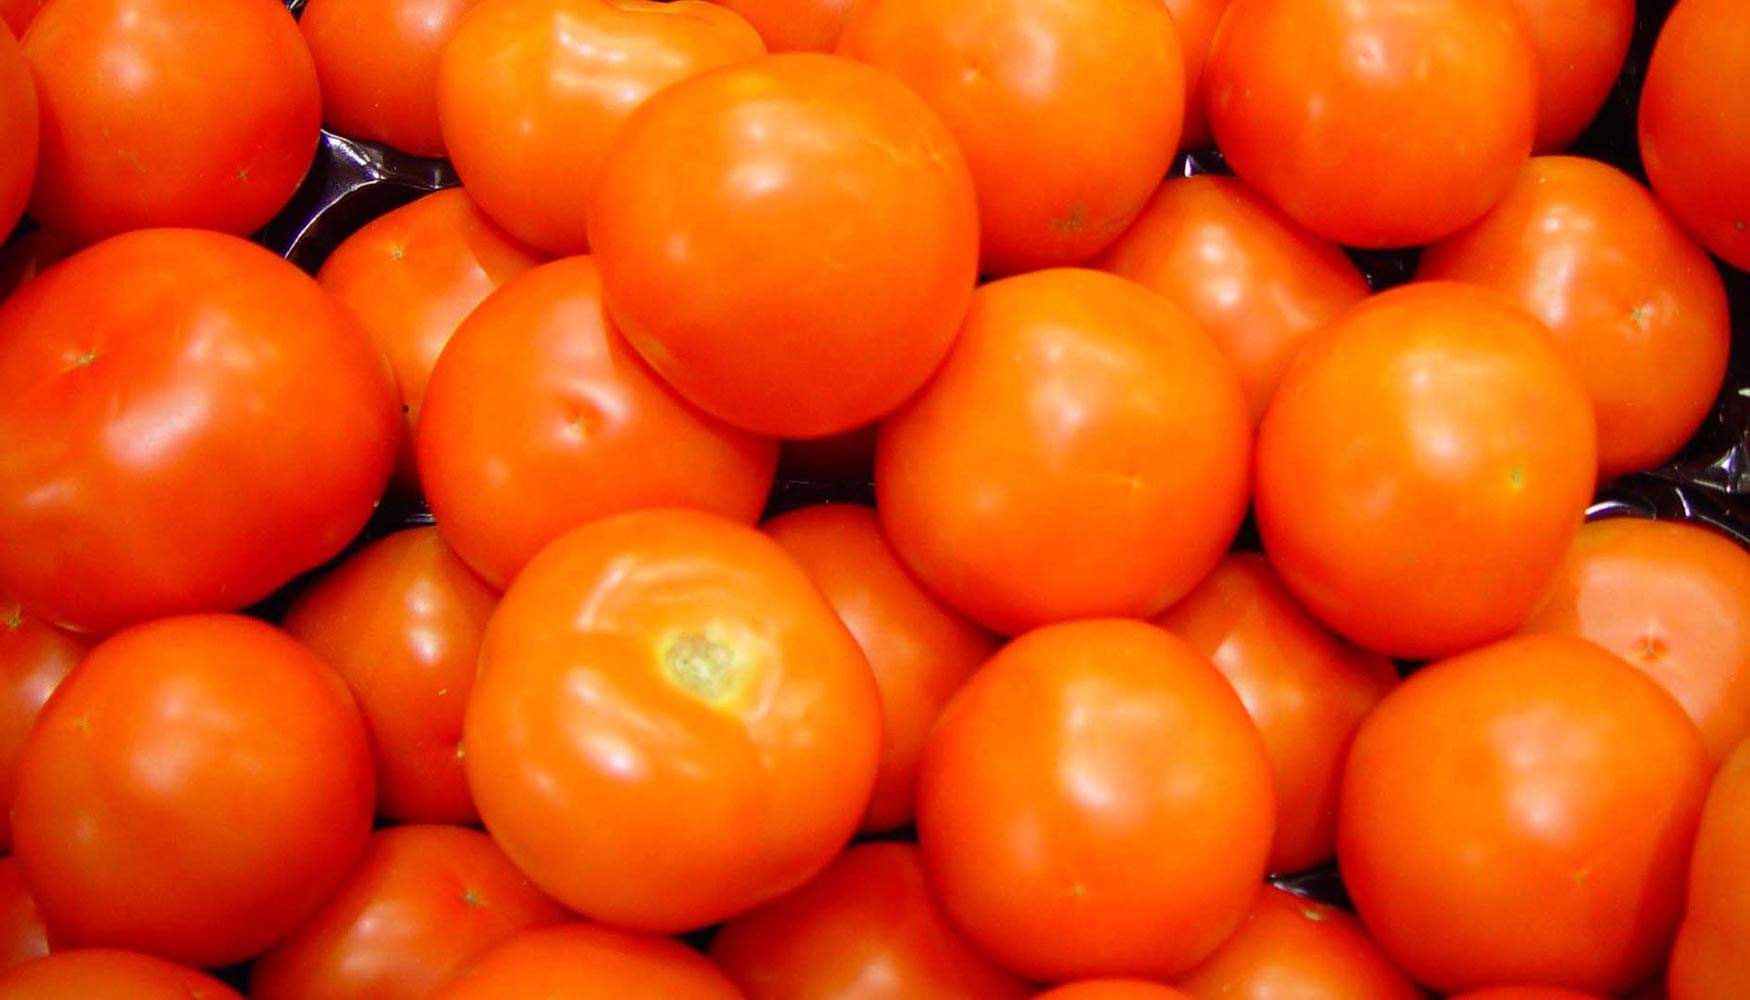 Fepex plante la necesidad de mejorar las medidas de gestin de crisis y de controlar las importaciones desordenadas de tomate de Marruecos...